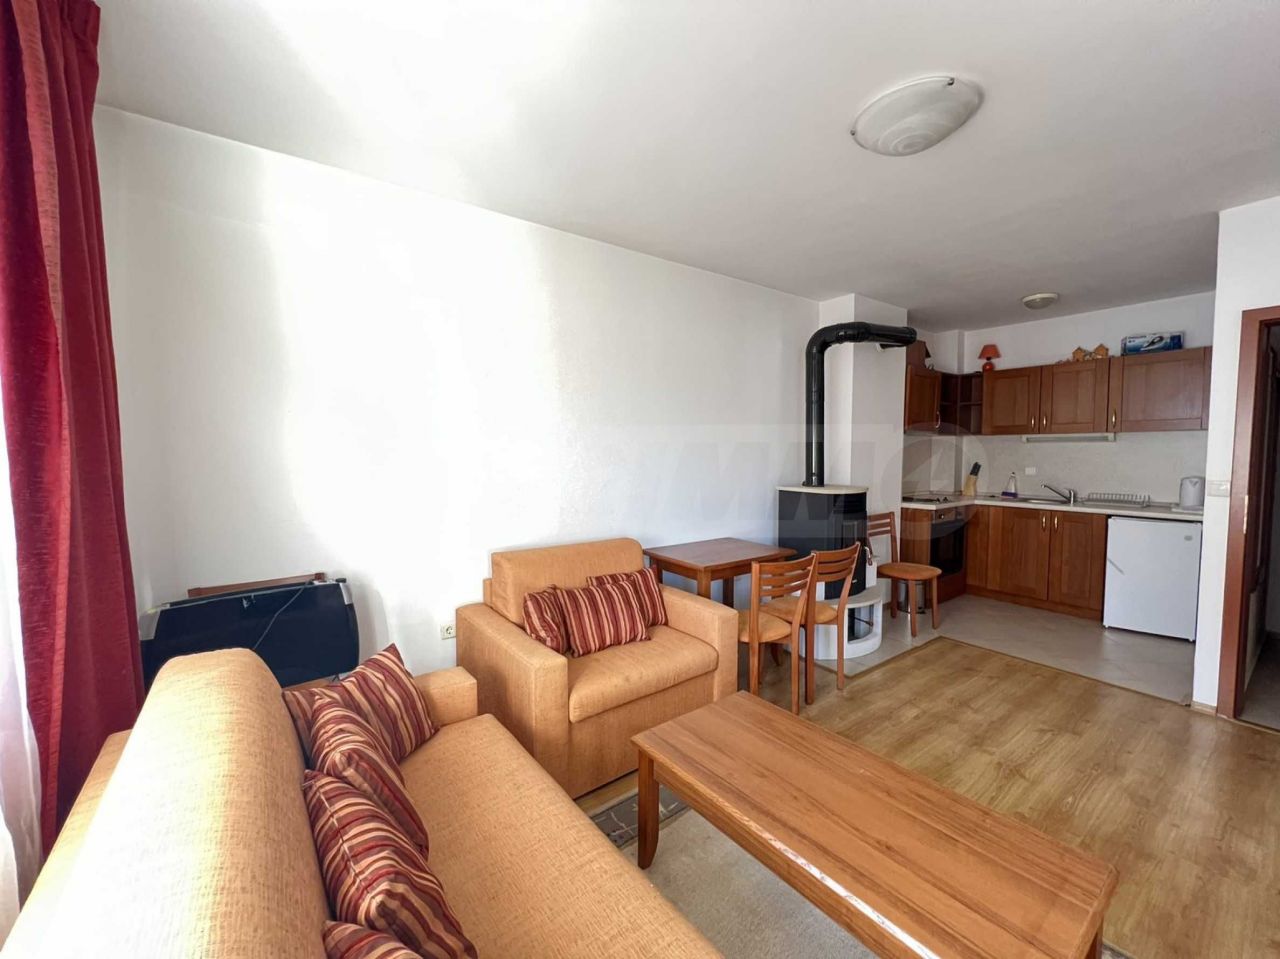 Apartment in Bansko, Bulgaria, 60.37 sq.m - picture 1